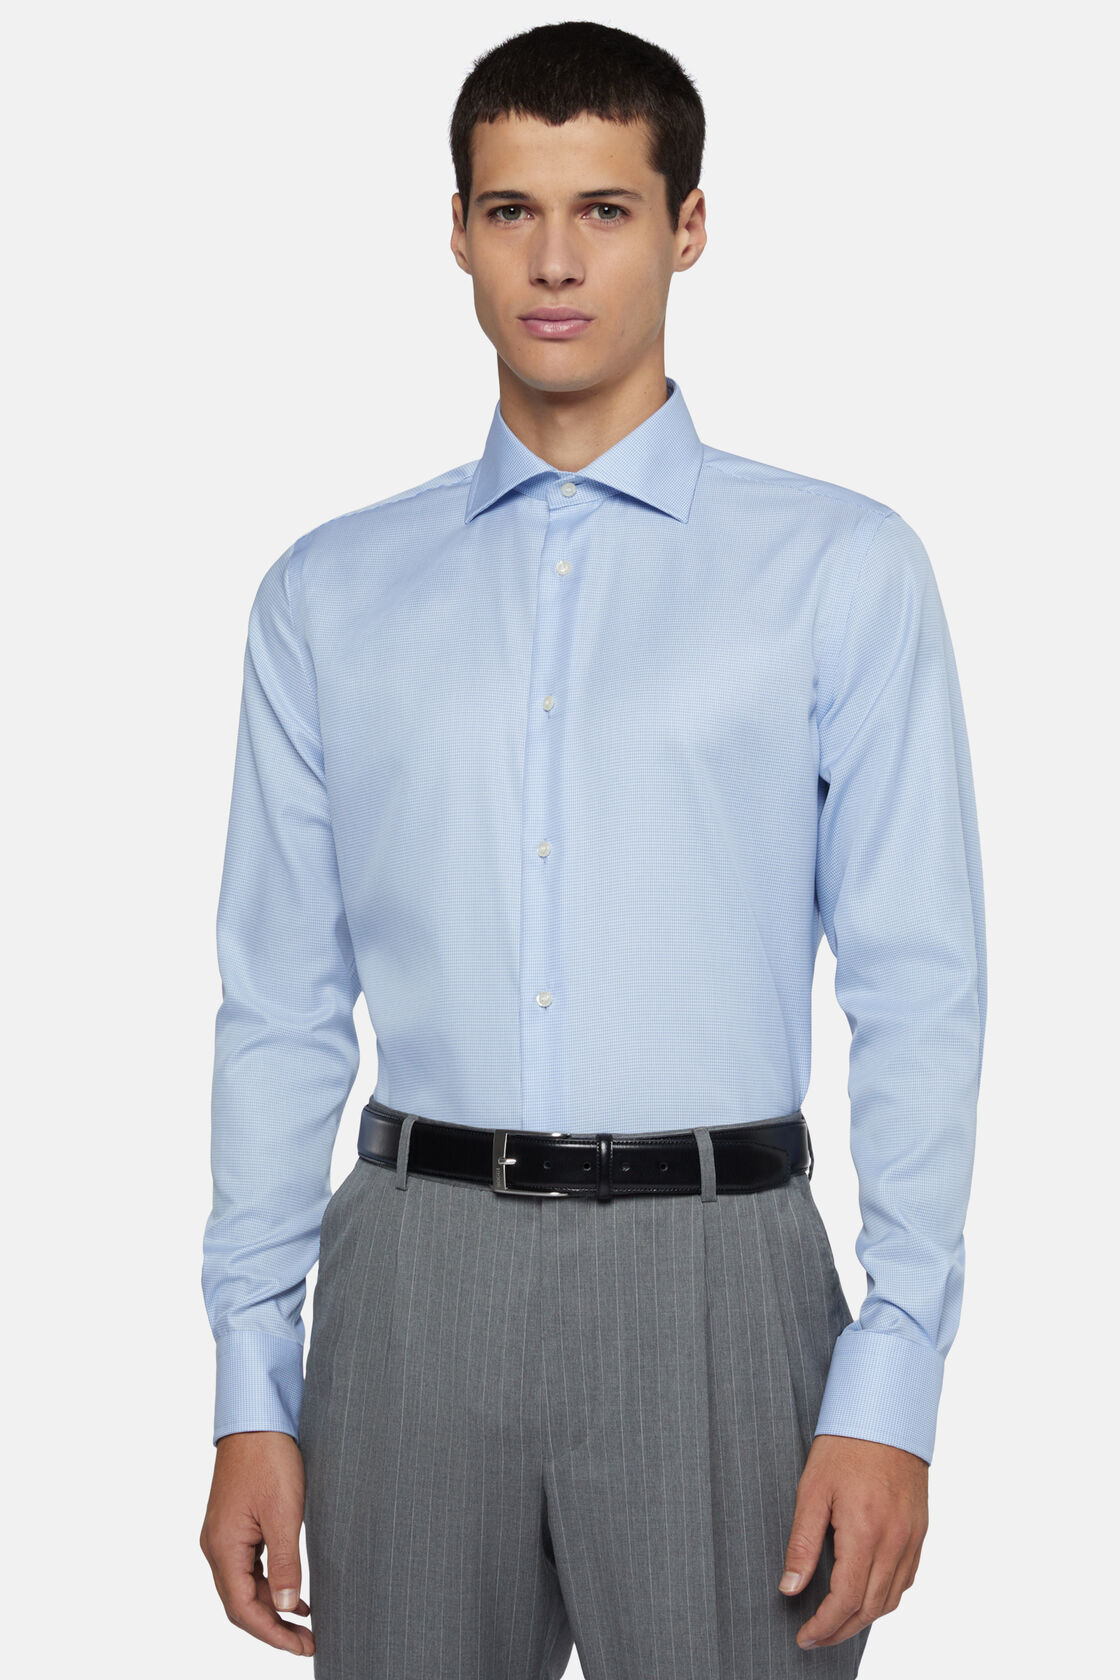 Azurblaues Hemd mit Hahnentrittmuster aus Baumwolle Regular Fit, Hellblau, hi-res